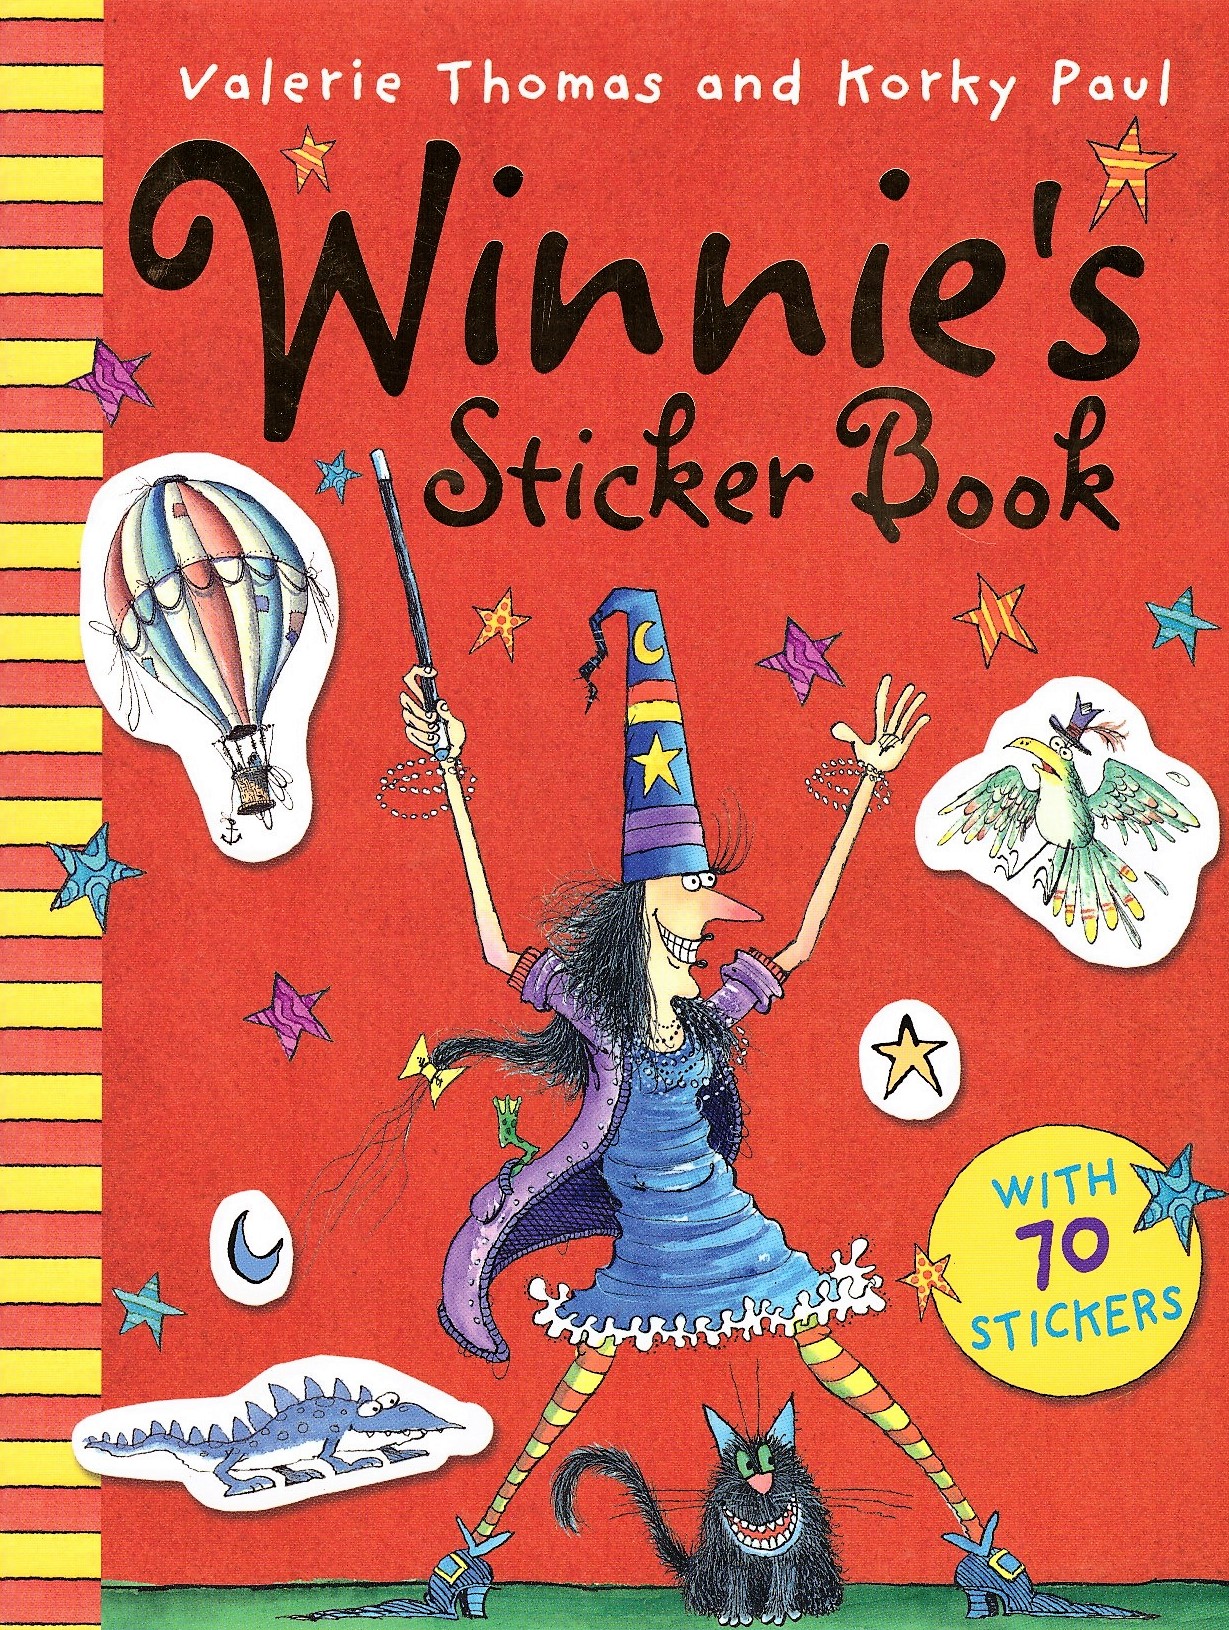 Winnie's Sticker Book